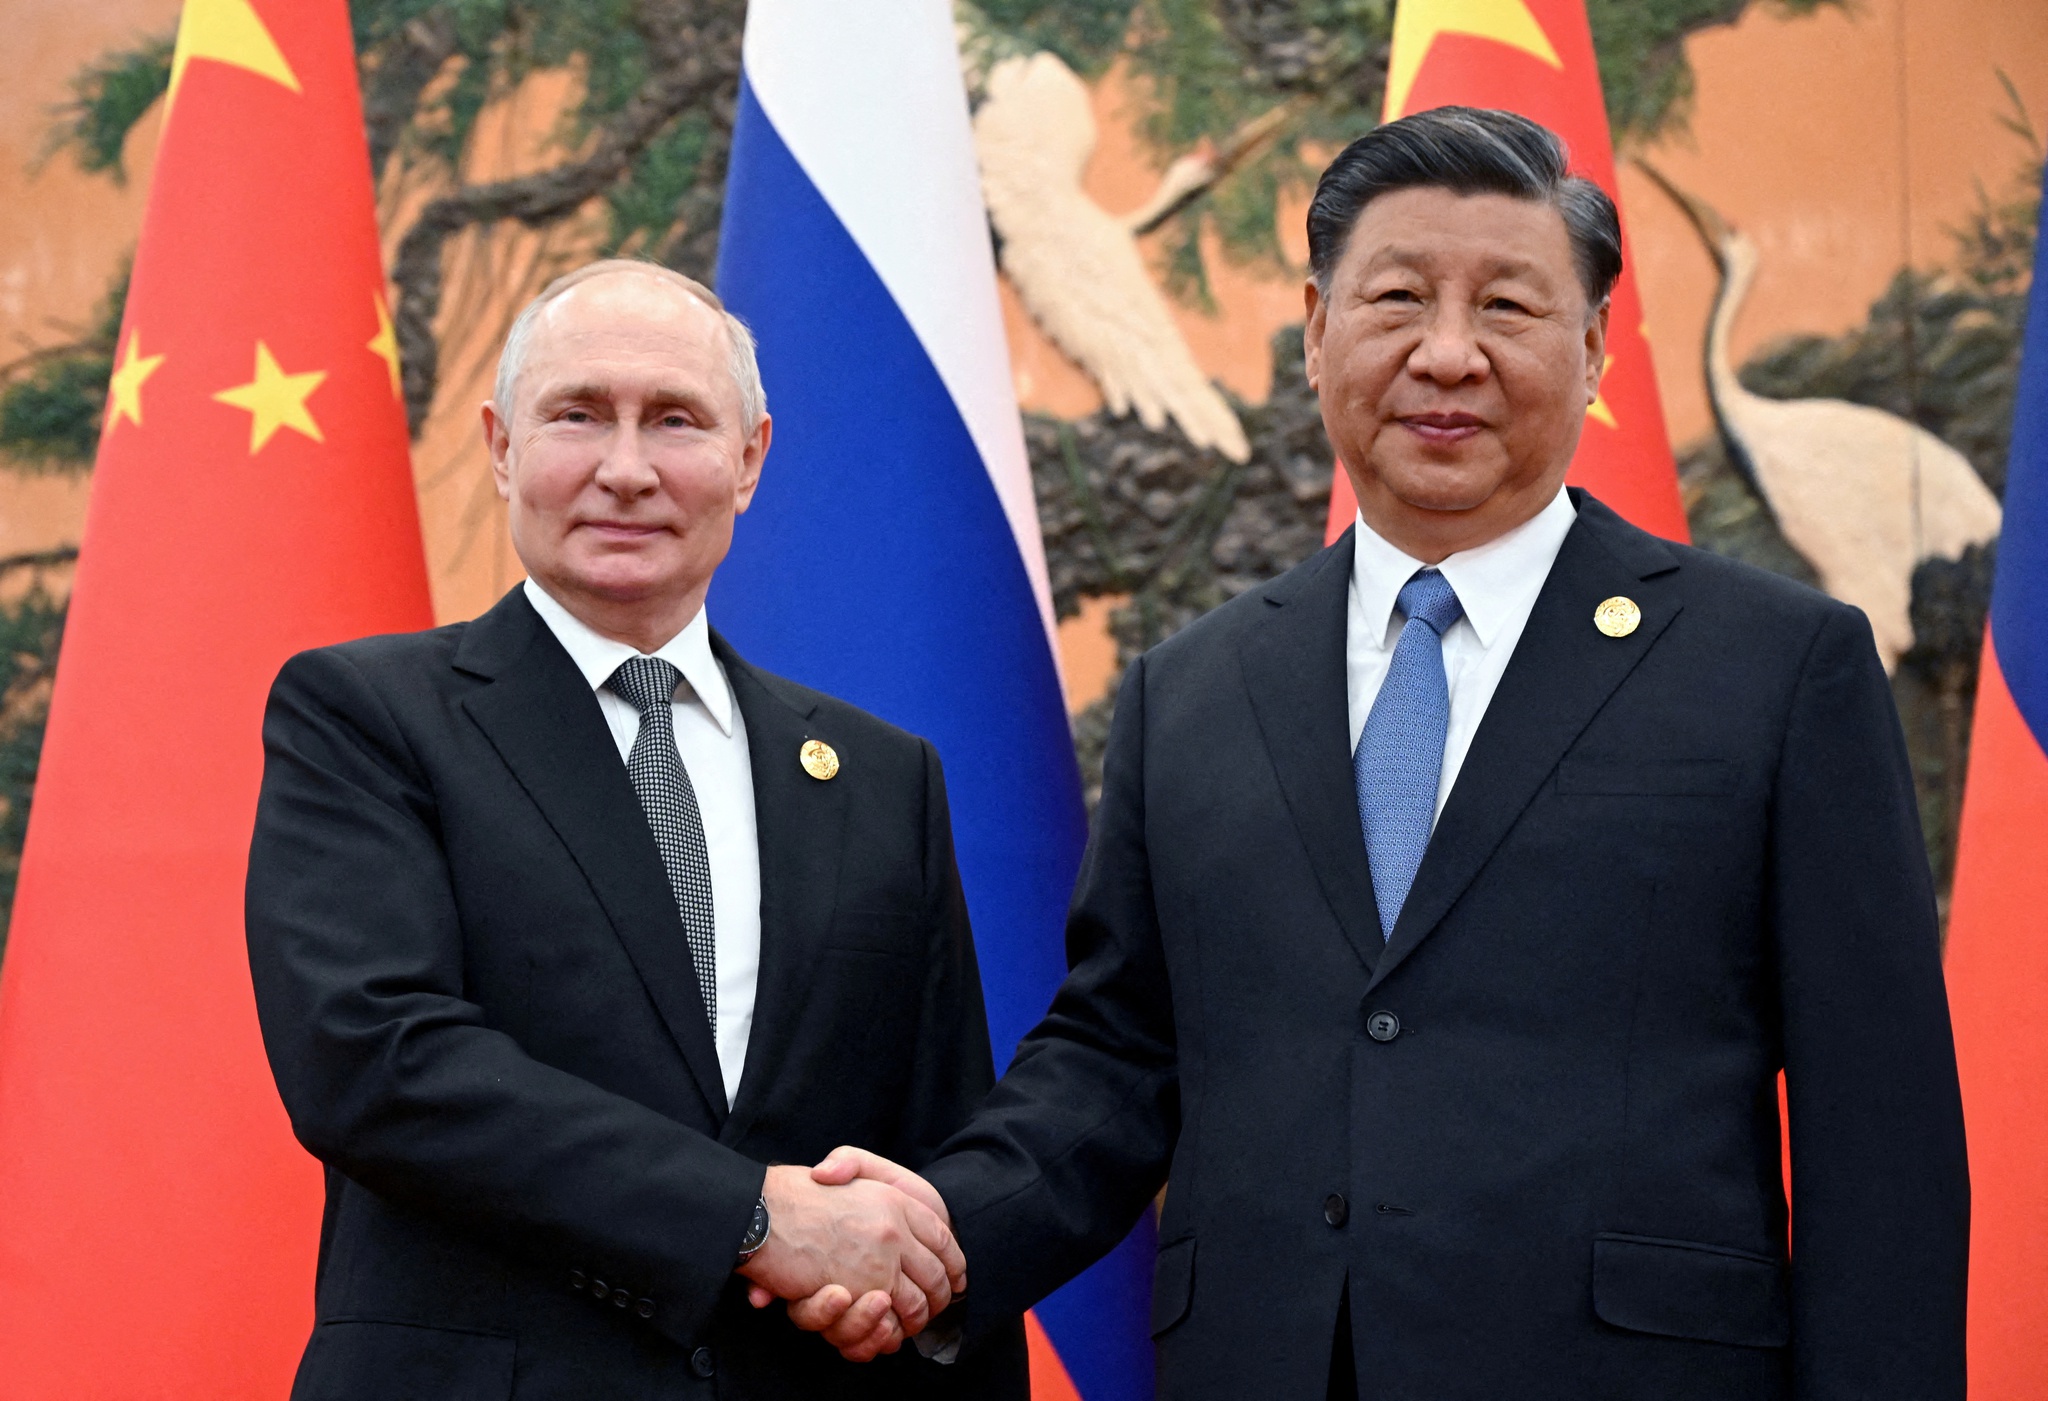 Depois de viajar pela Europa, Xi volta a receber o “querido amigo” Putin na China